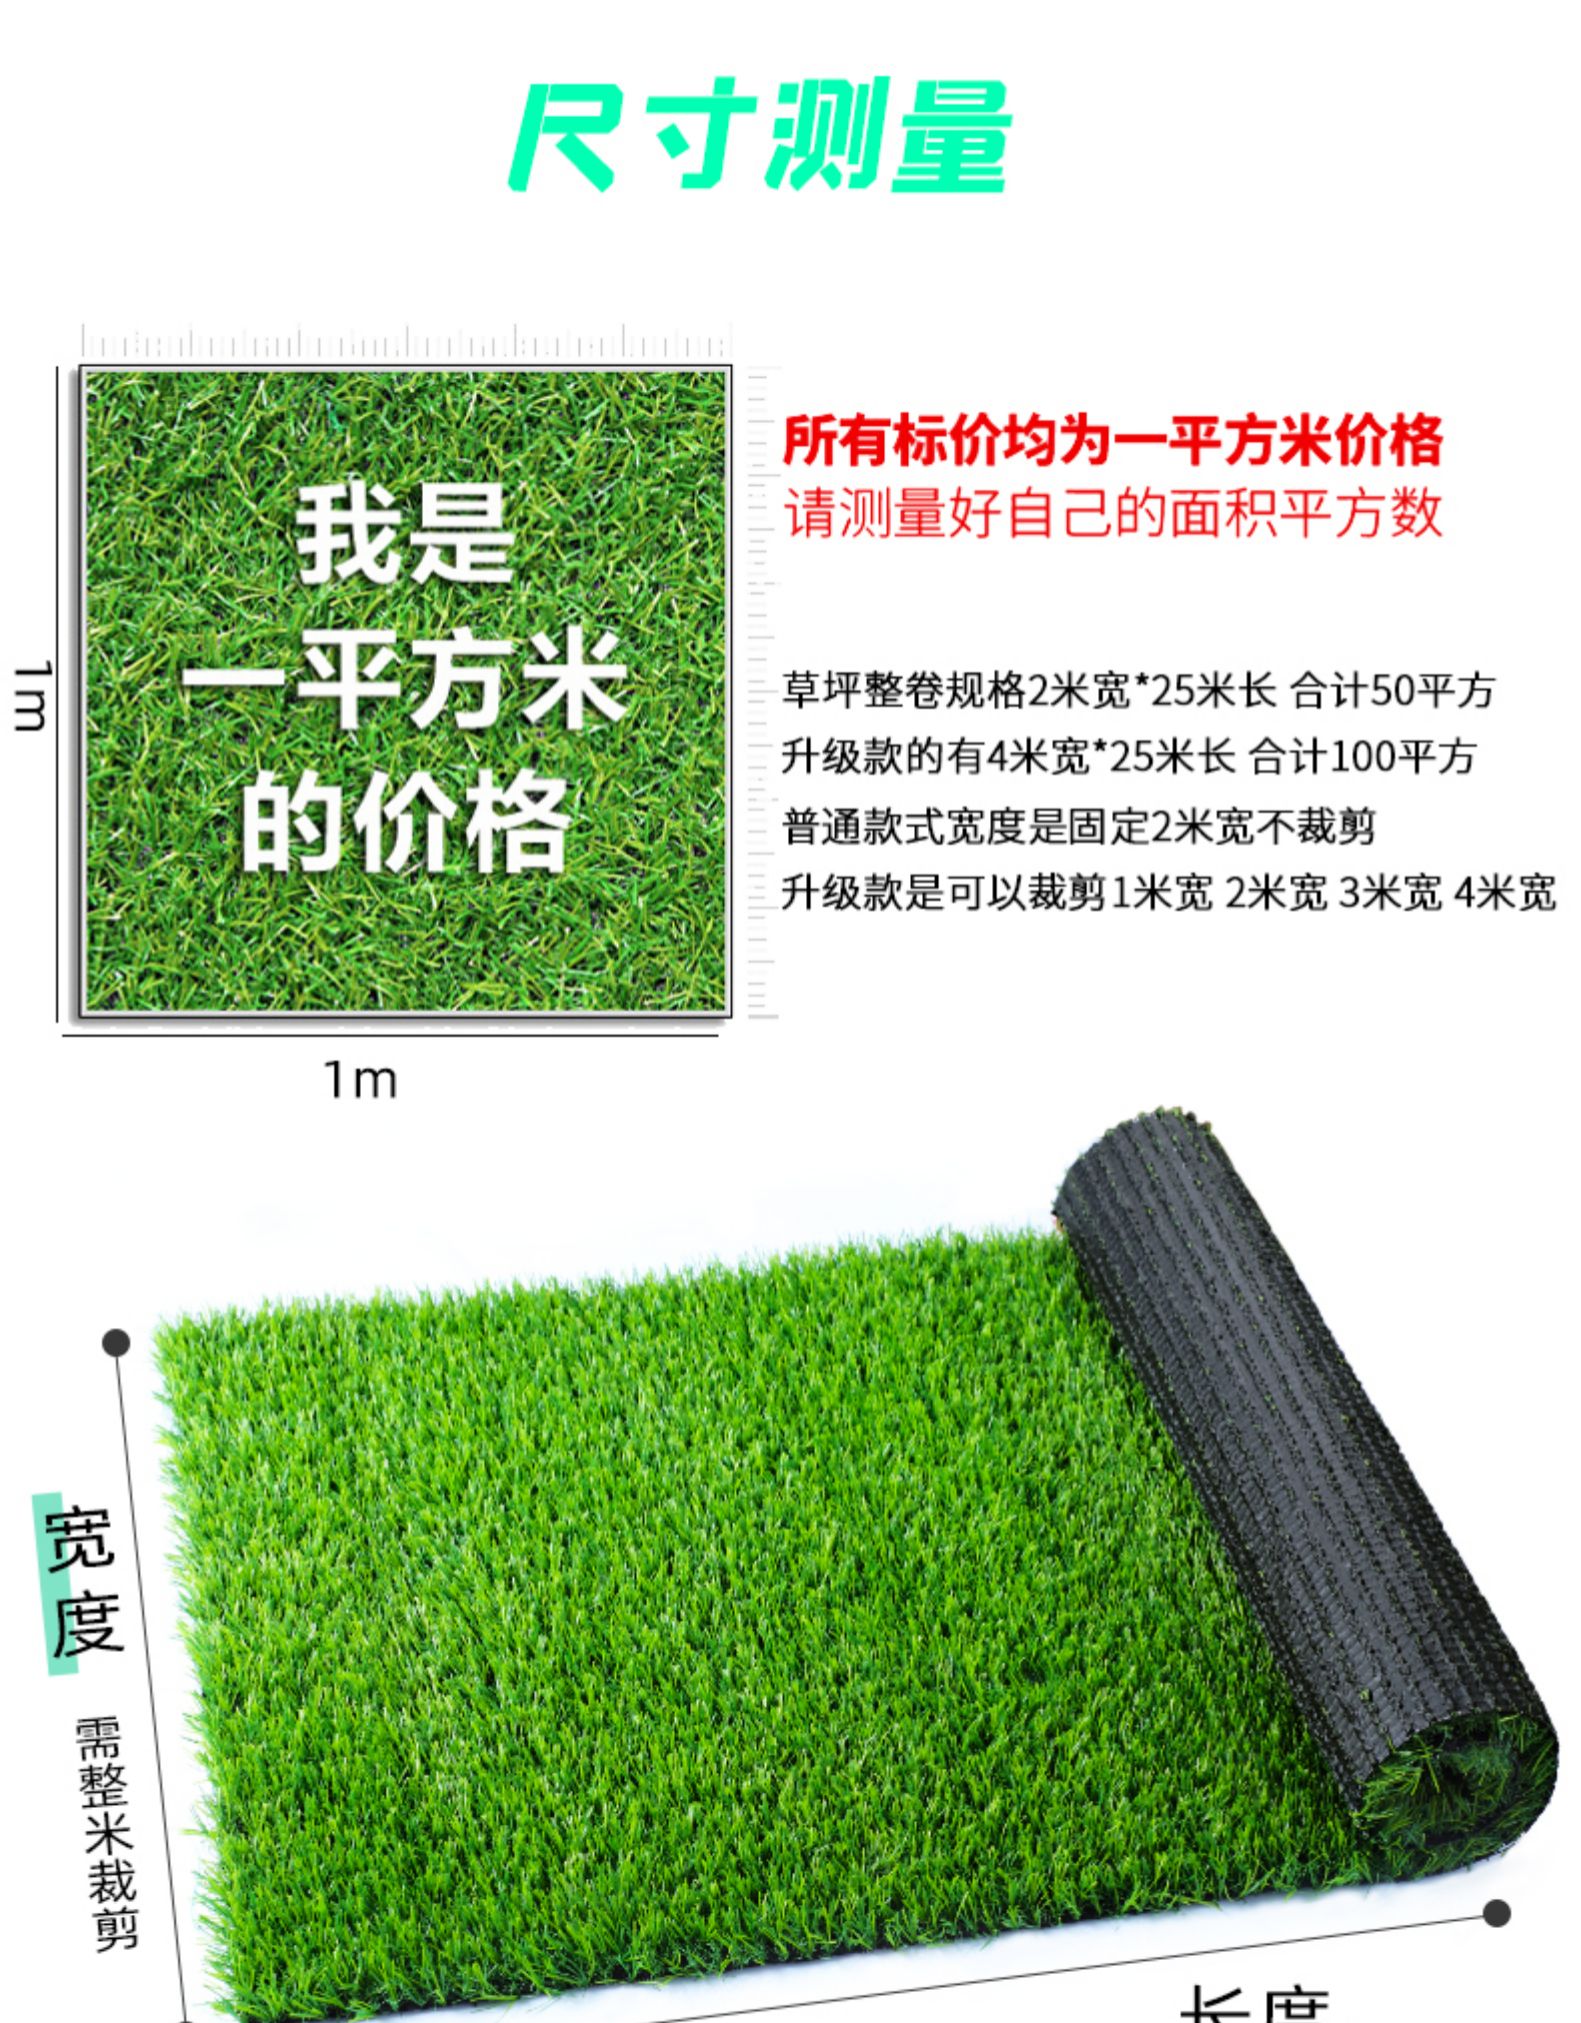 原材料足球场草皮地毯价格也从几十到几百不等？